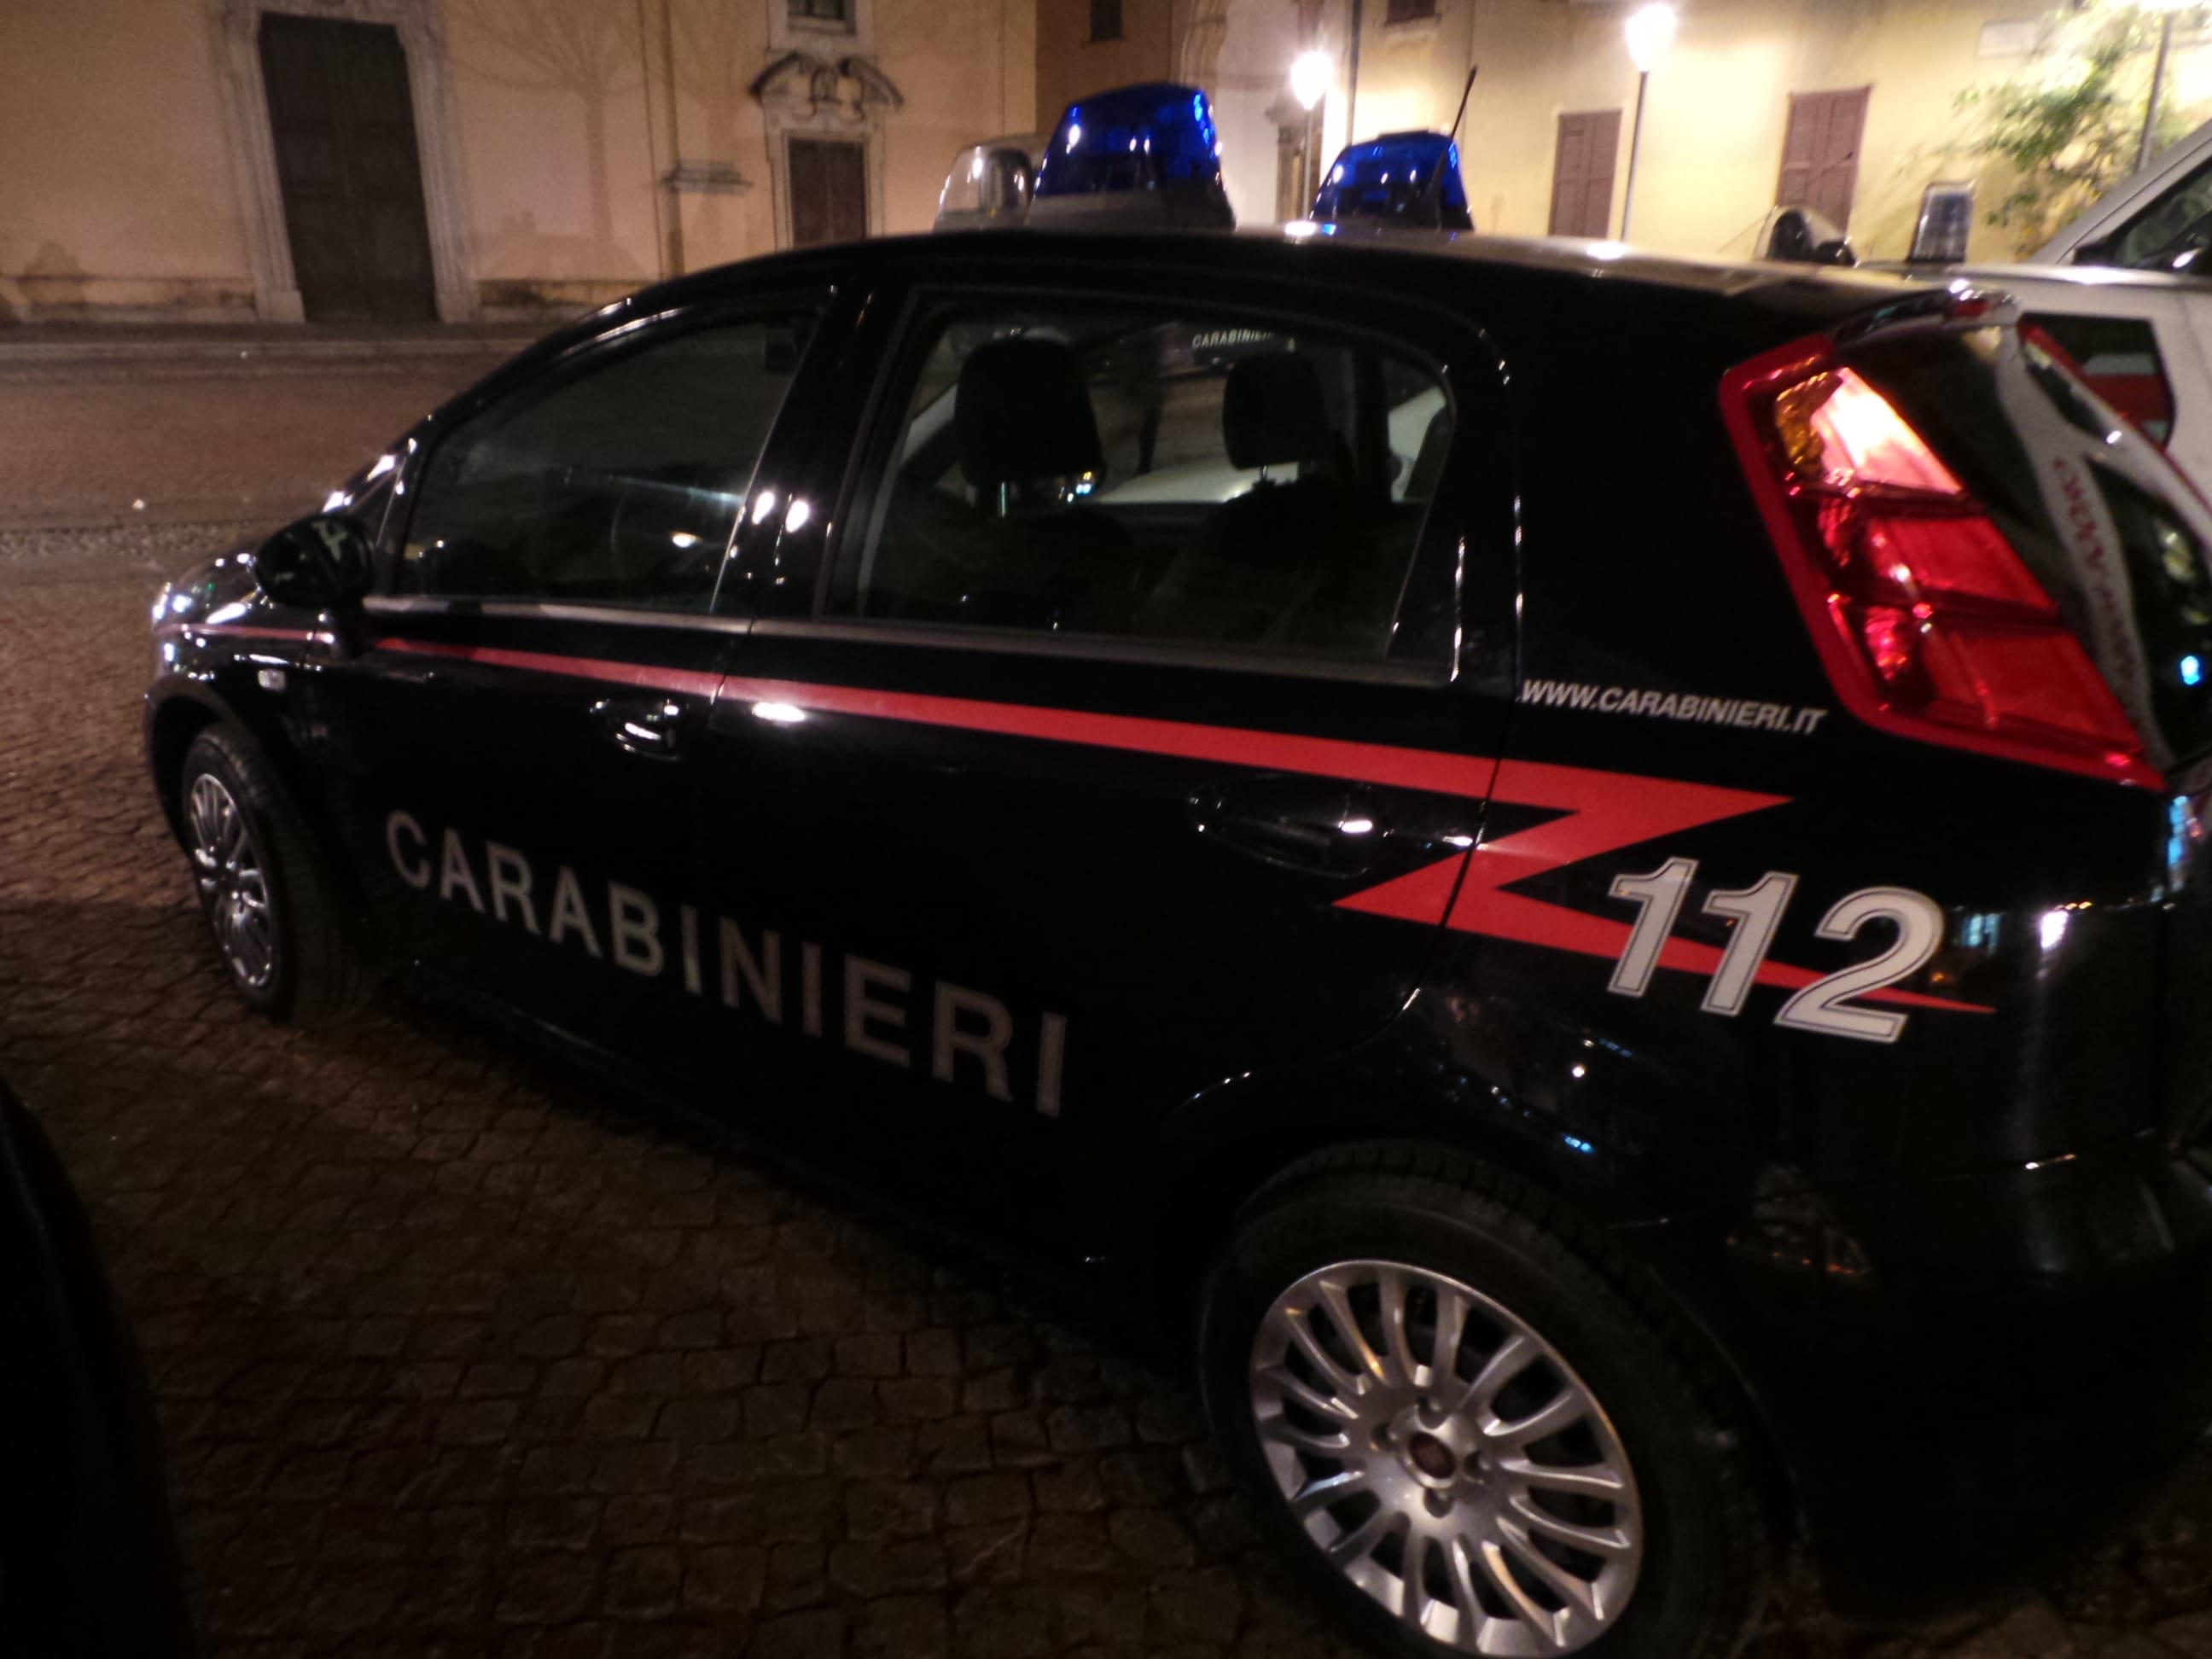 Coppia tenta di ripulire il liceo, arrestata dai carabinieri